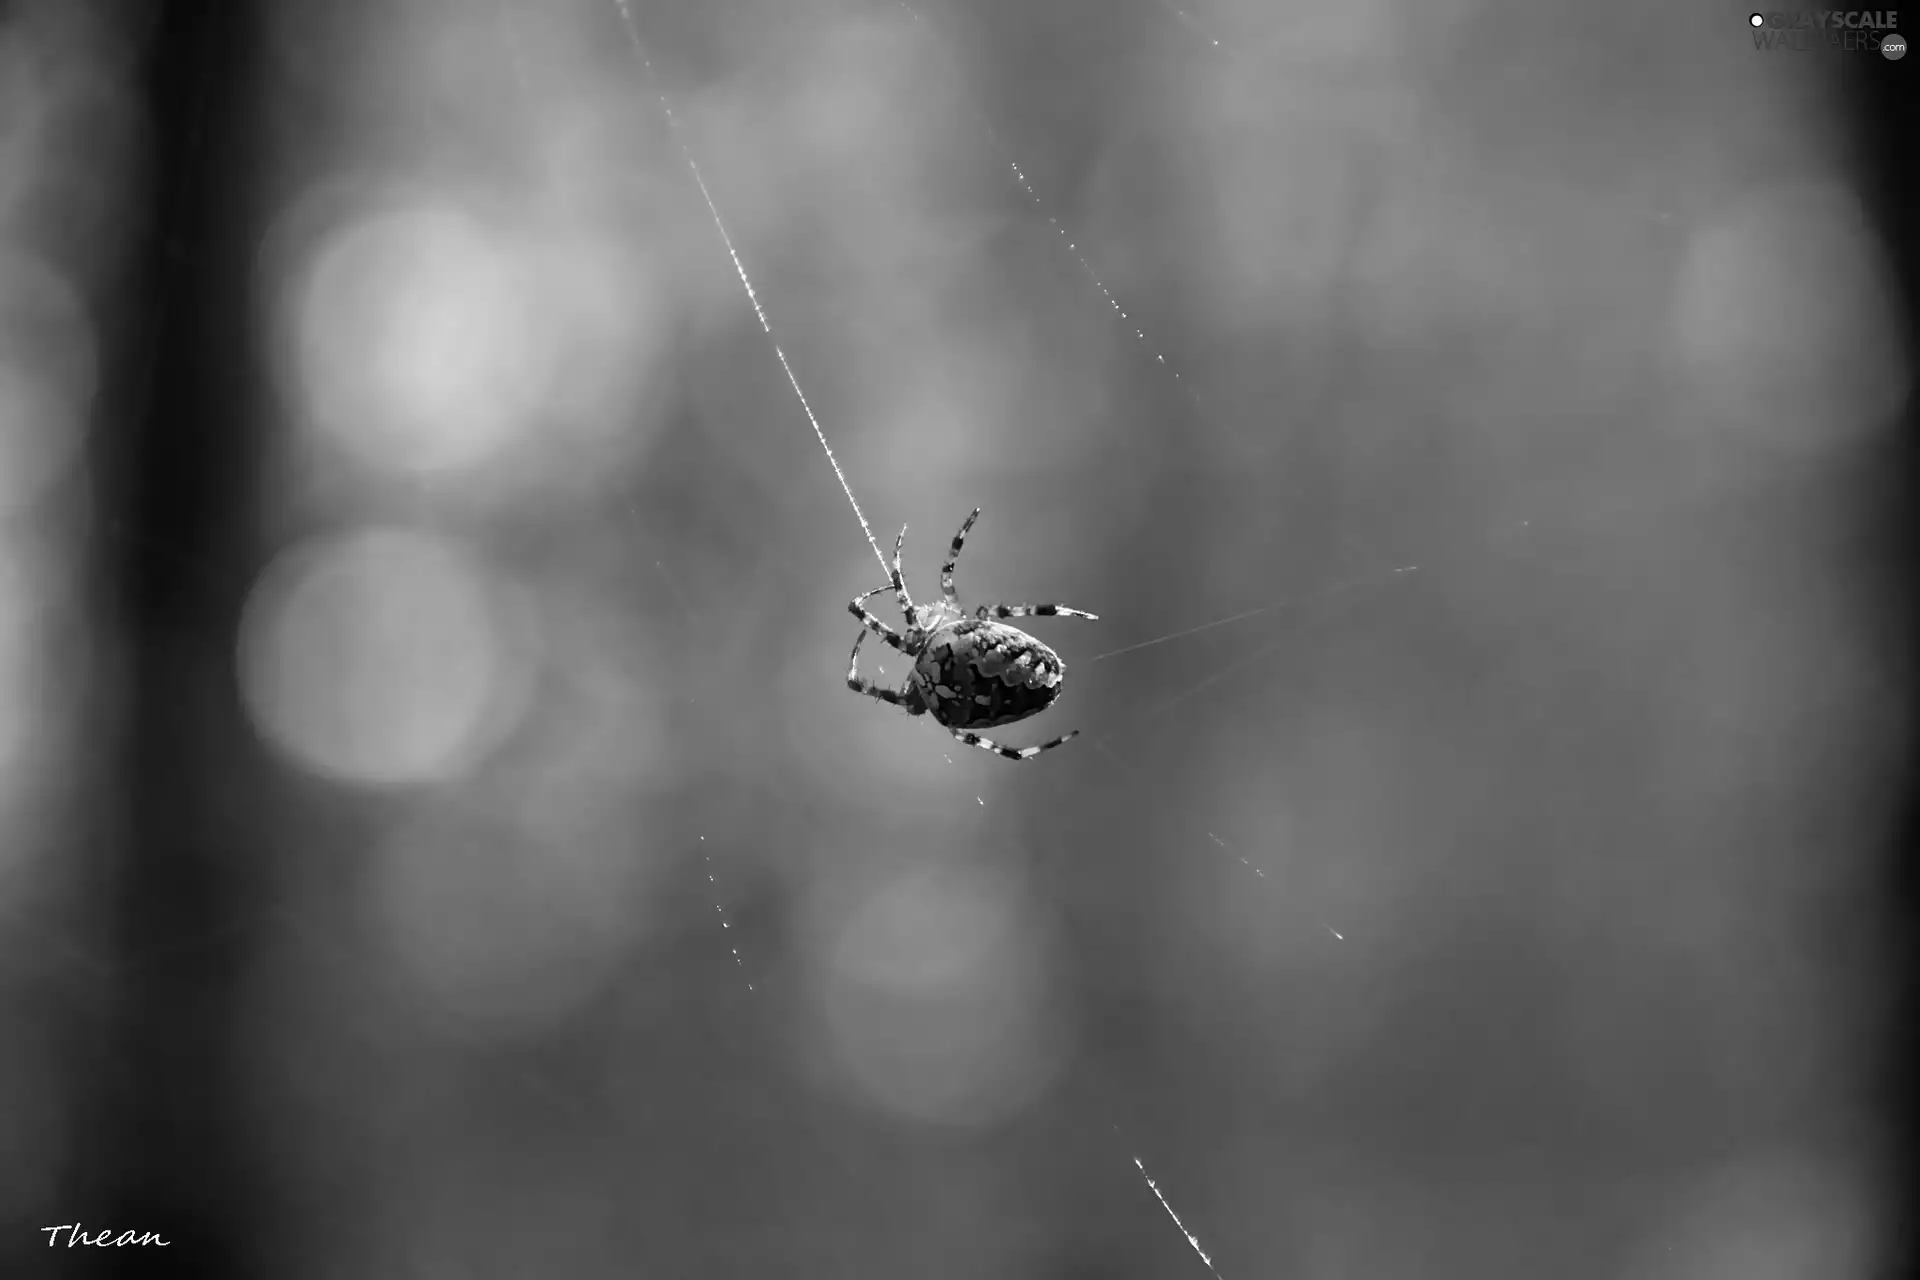 Spider, trestle